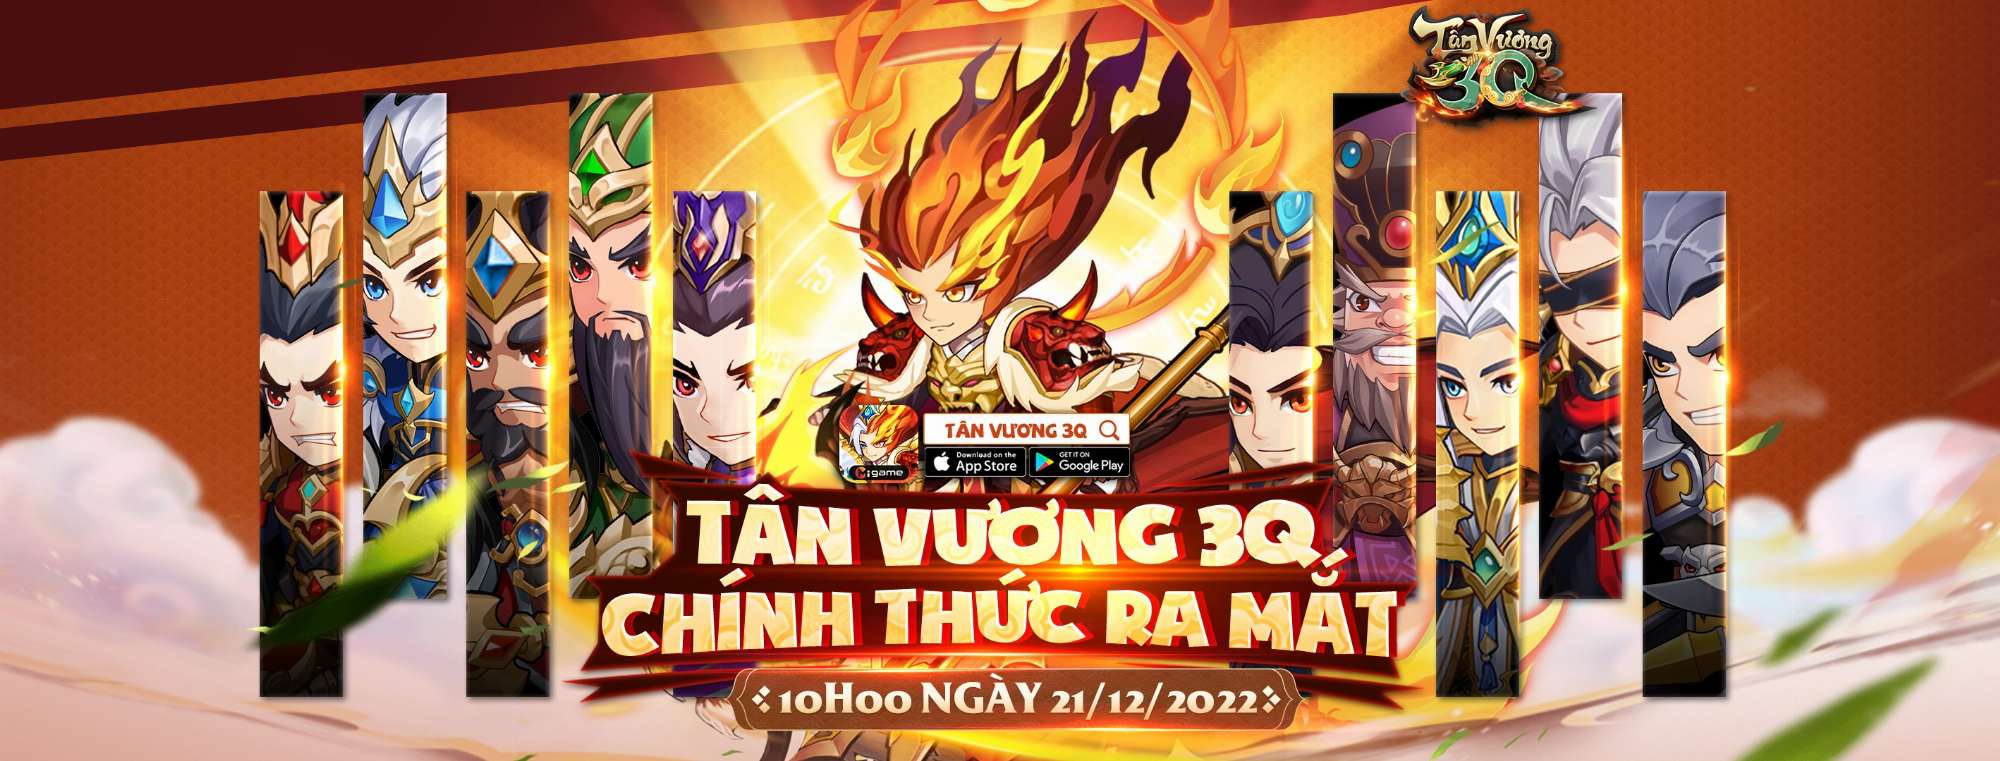 Game đấu tướng chiến thuật rảnh tay Tân Vương 3Q chính thức ra mắt giới game thủ Việt